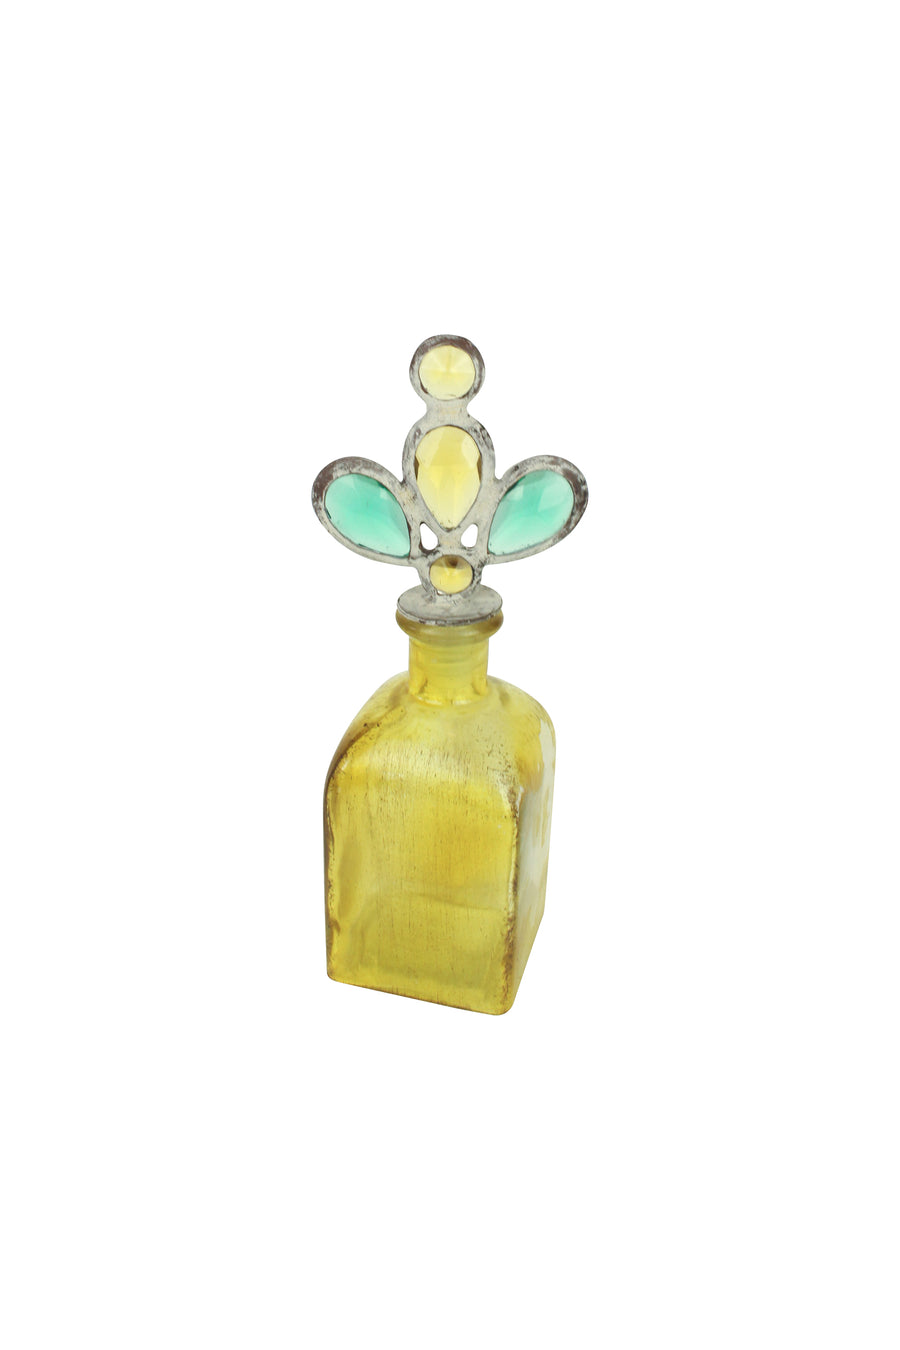 Bejeweled Bottle